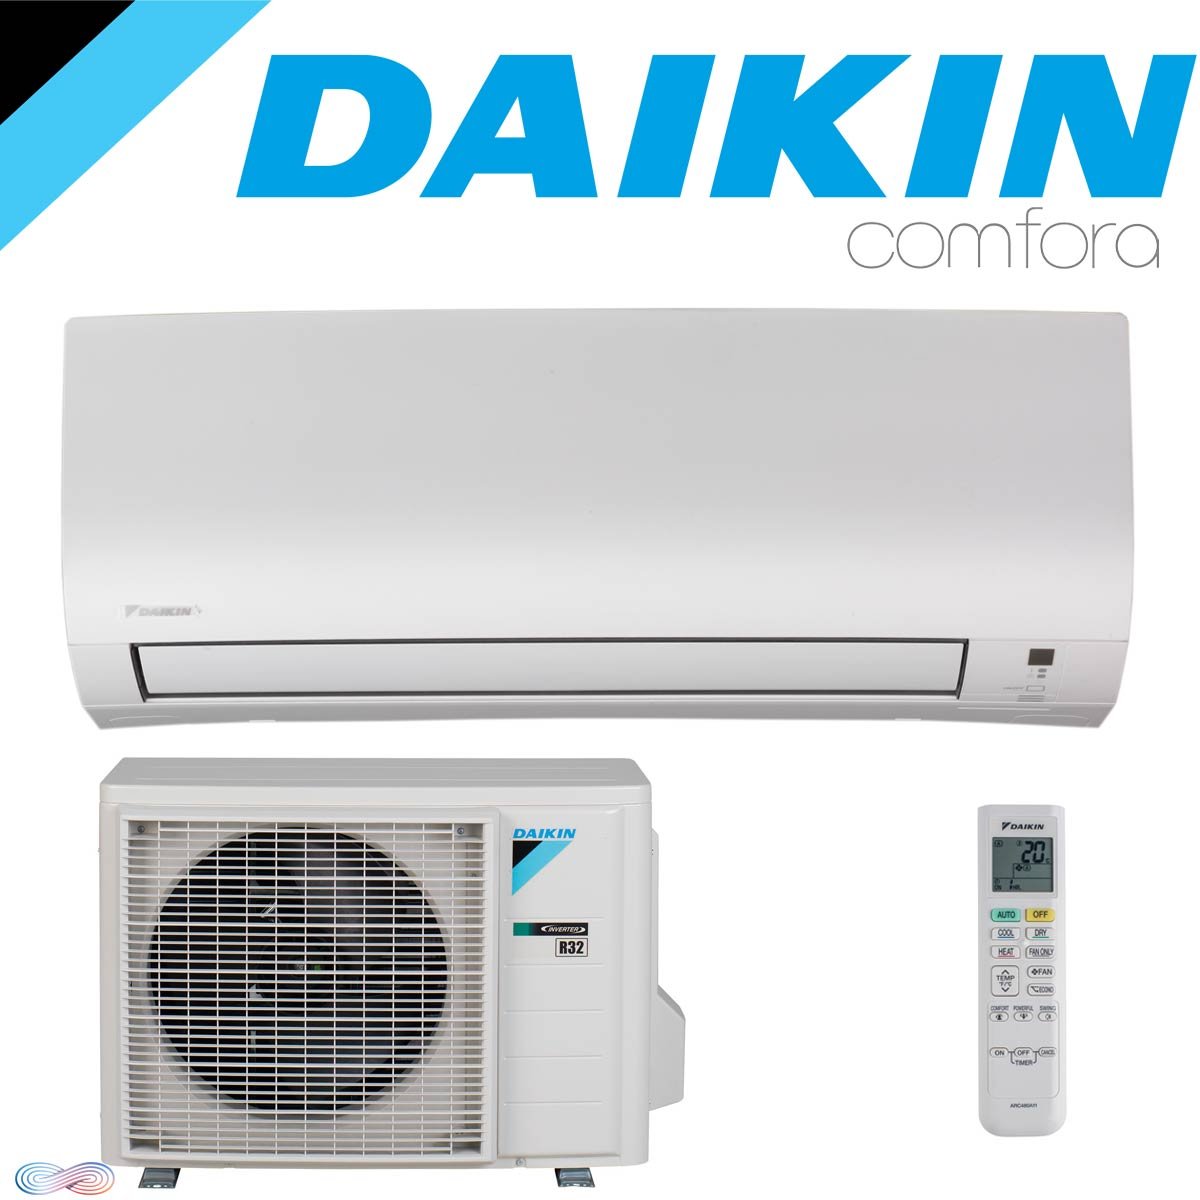 DAIKIN COMFORA Klimaanlage SET Wandgerät mit Außeneinheit 2,5 kW"" von DAIKIN